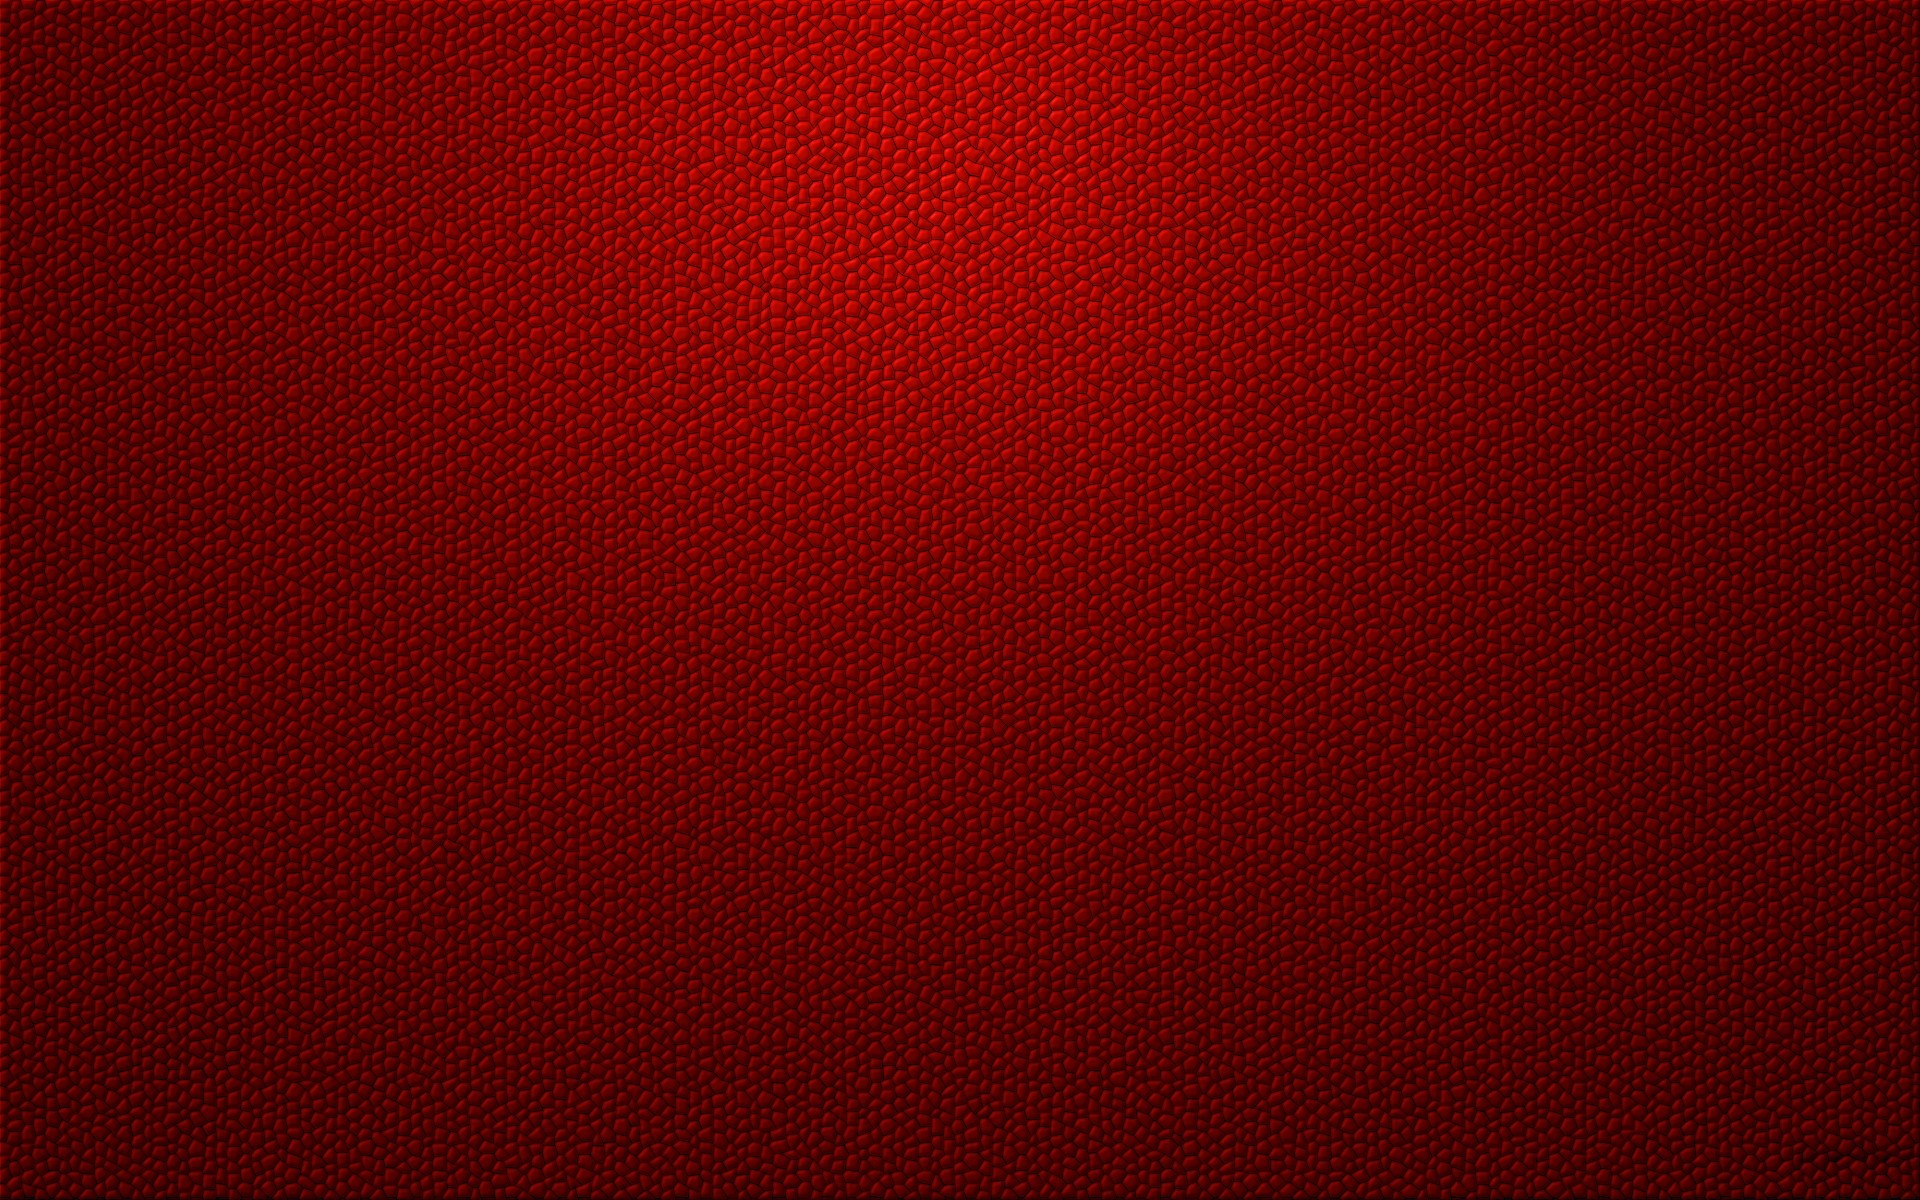 71+] Textured Red Wallpaper - WallpaperSafari